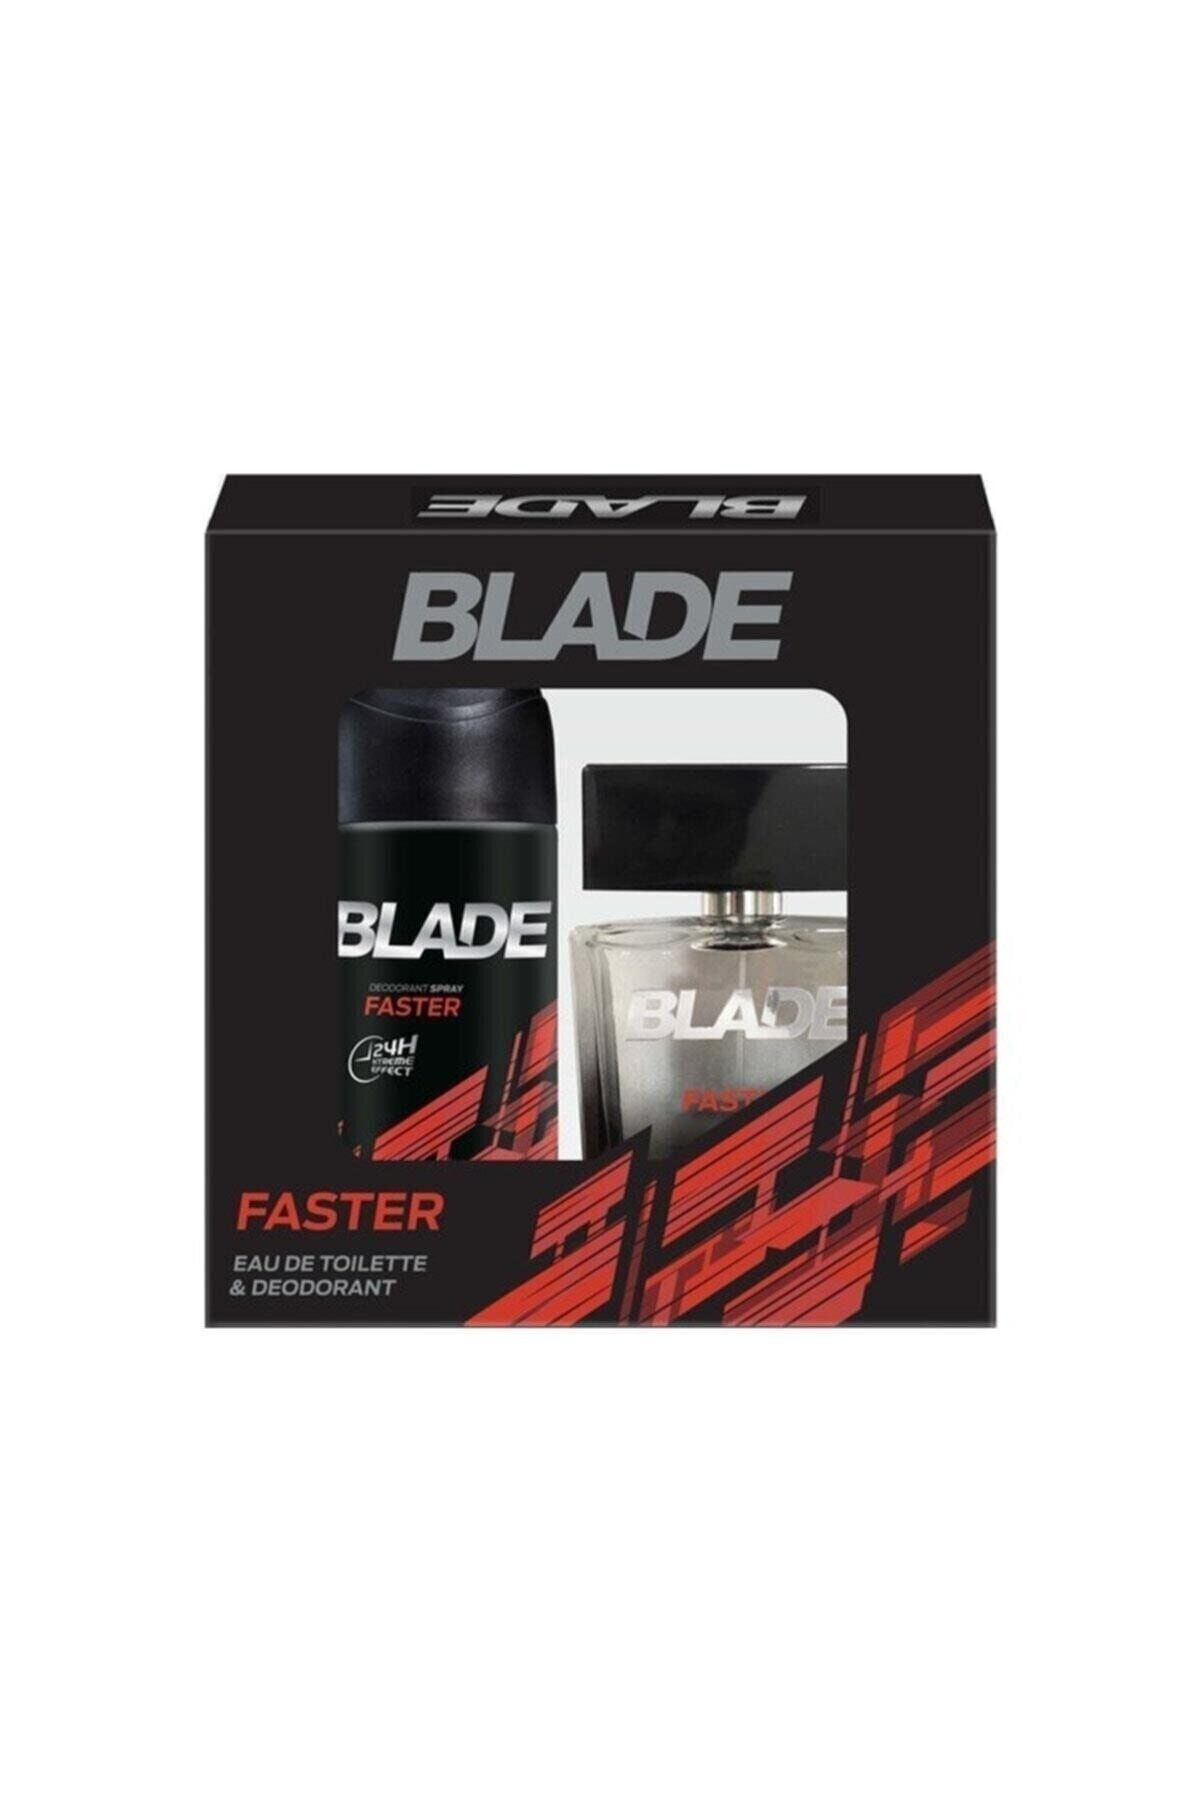 Blade Faster Erkek Parfüm Set